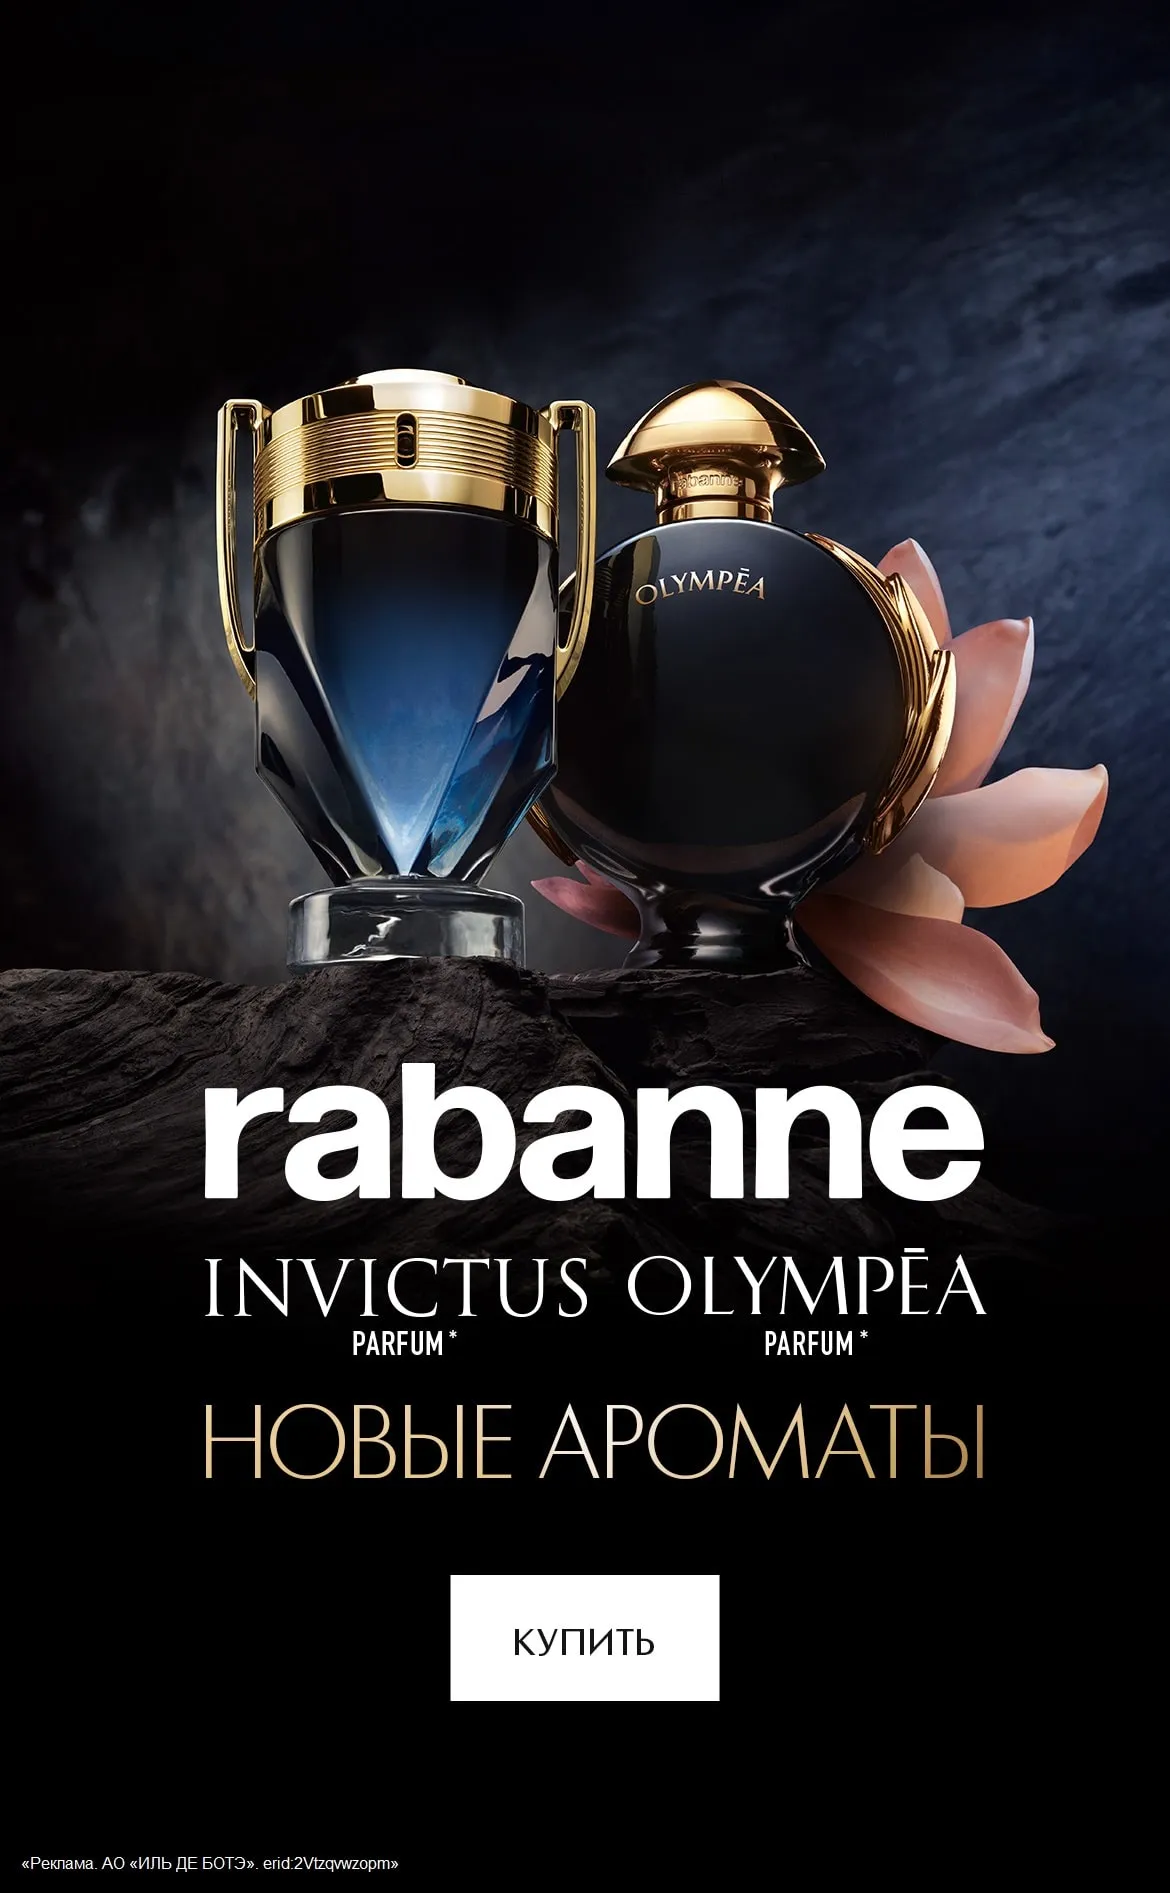 Встречайте новые ароматы от Paco Rabanne в ИЛЬ ДЕ БОТЭ!